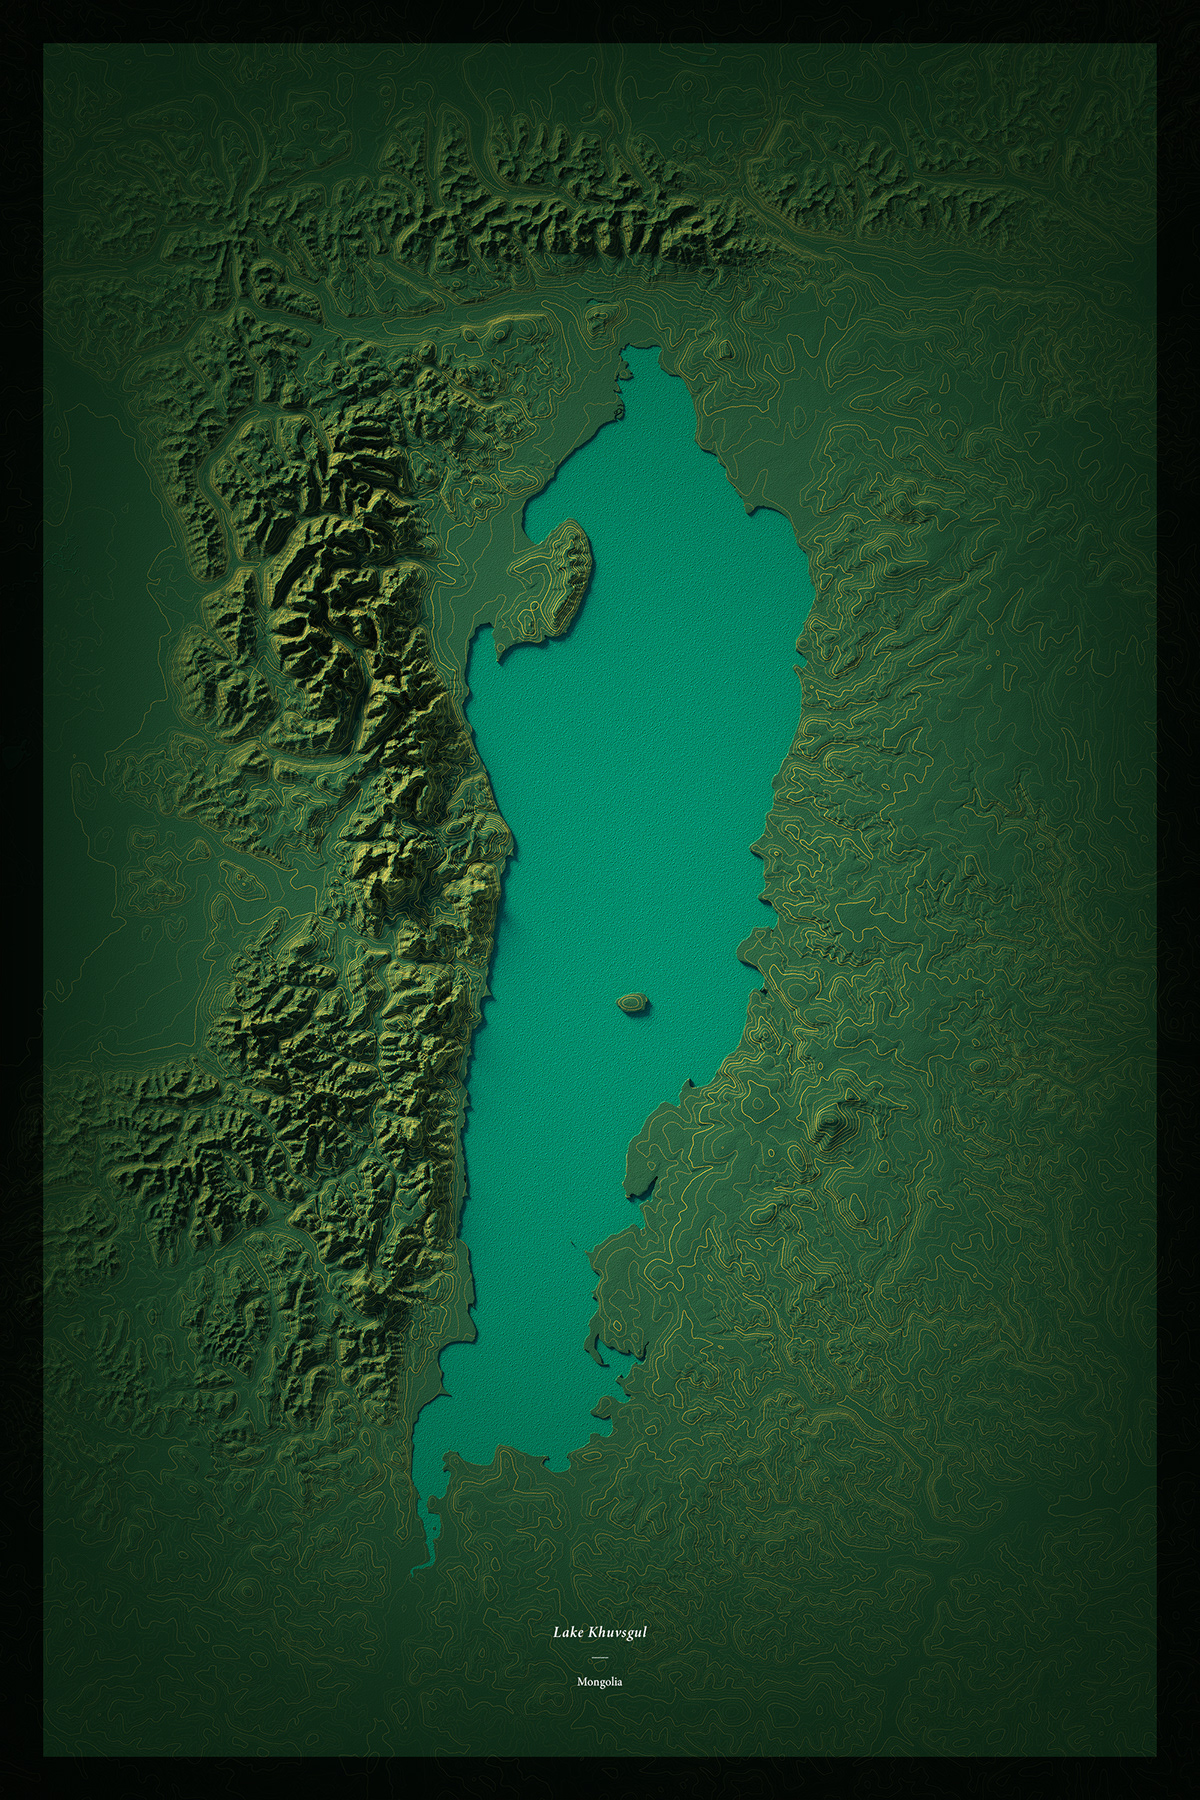 Cartographic map (data visualization) of lake Khuvsgul. Tools: Blender, Photoshop, Illustrator